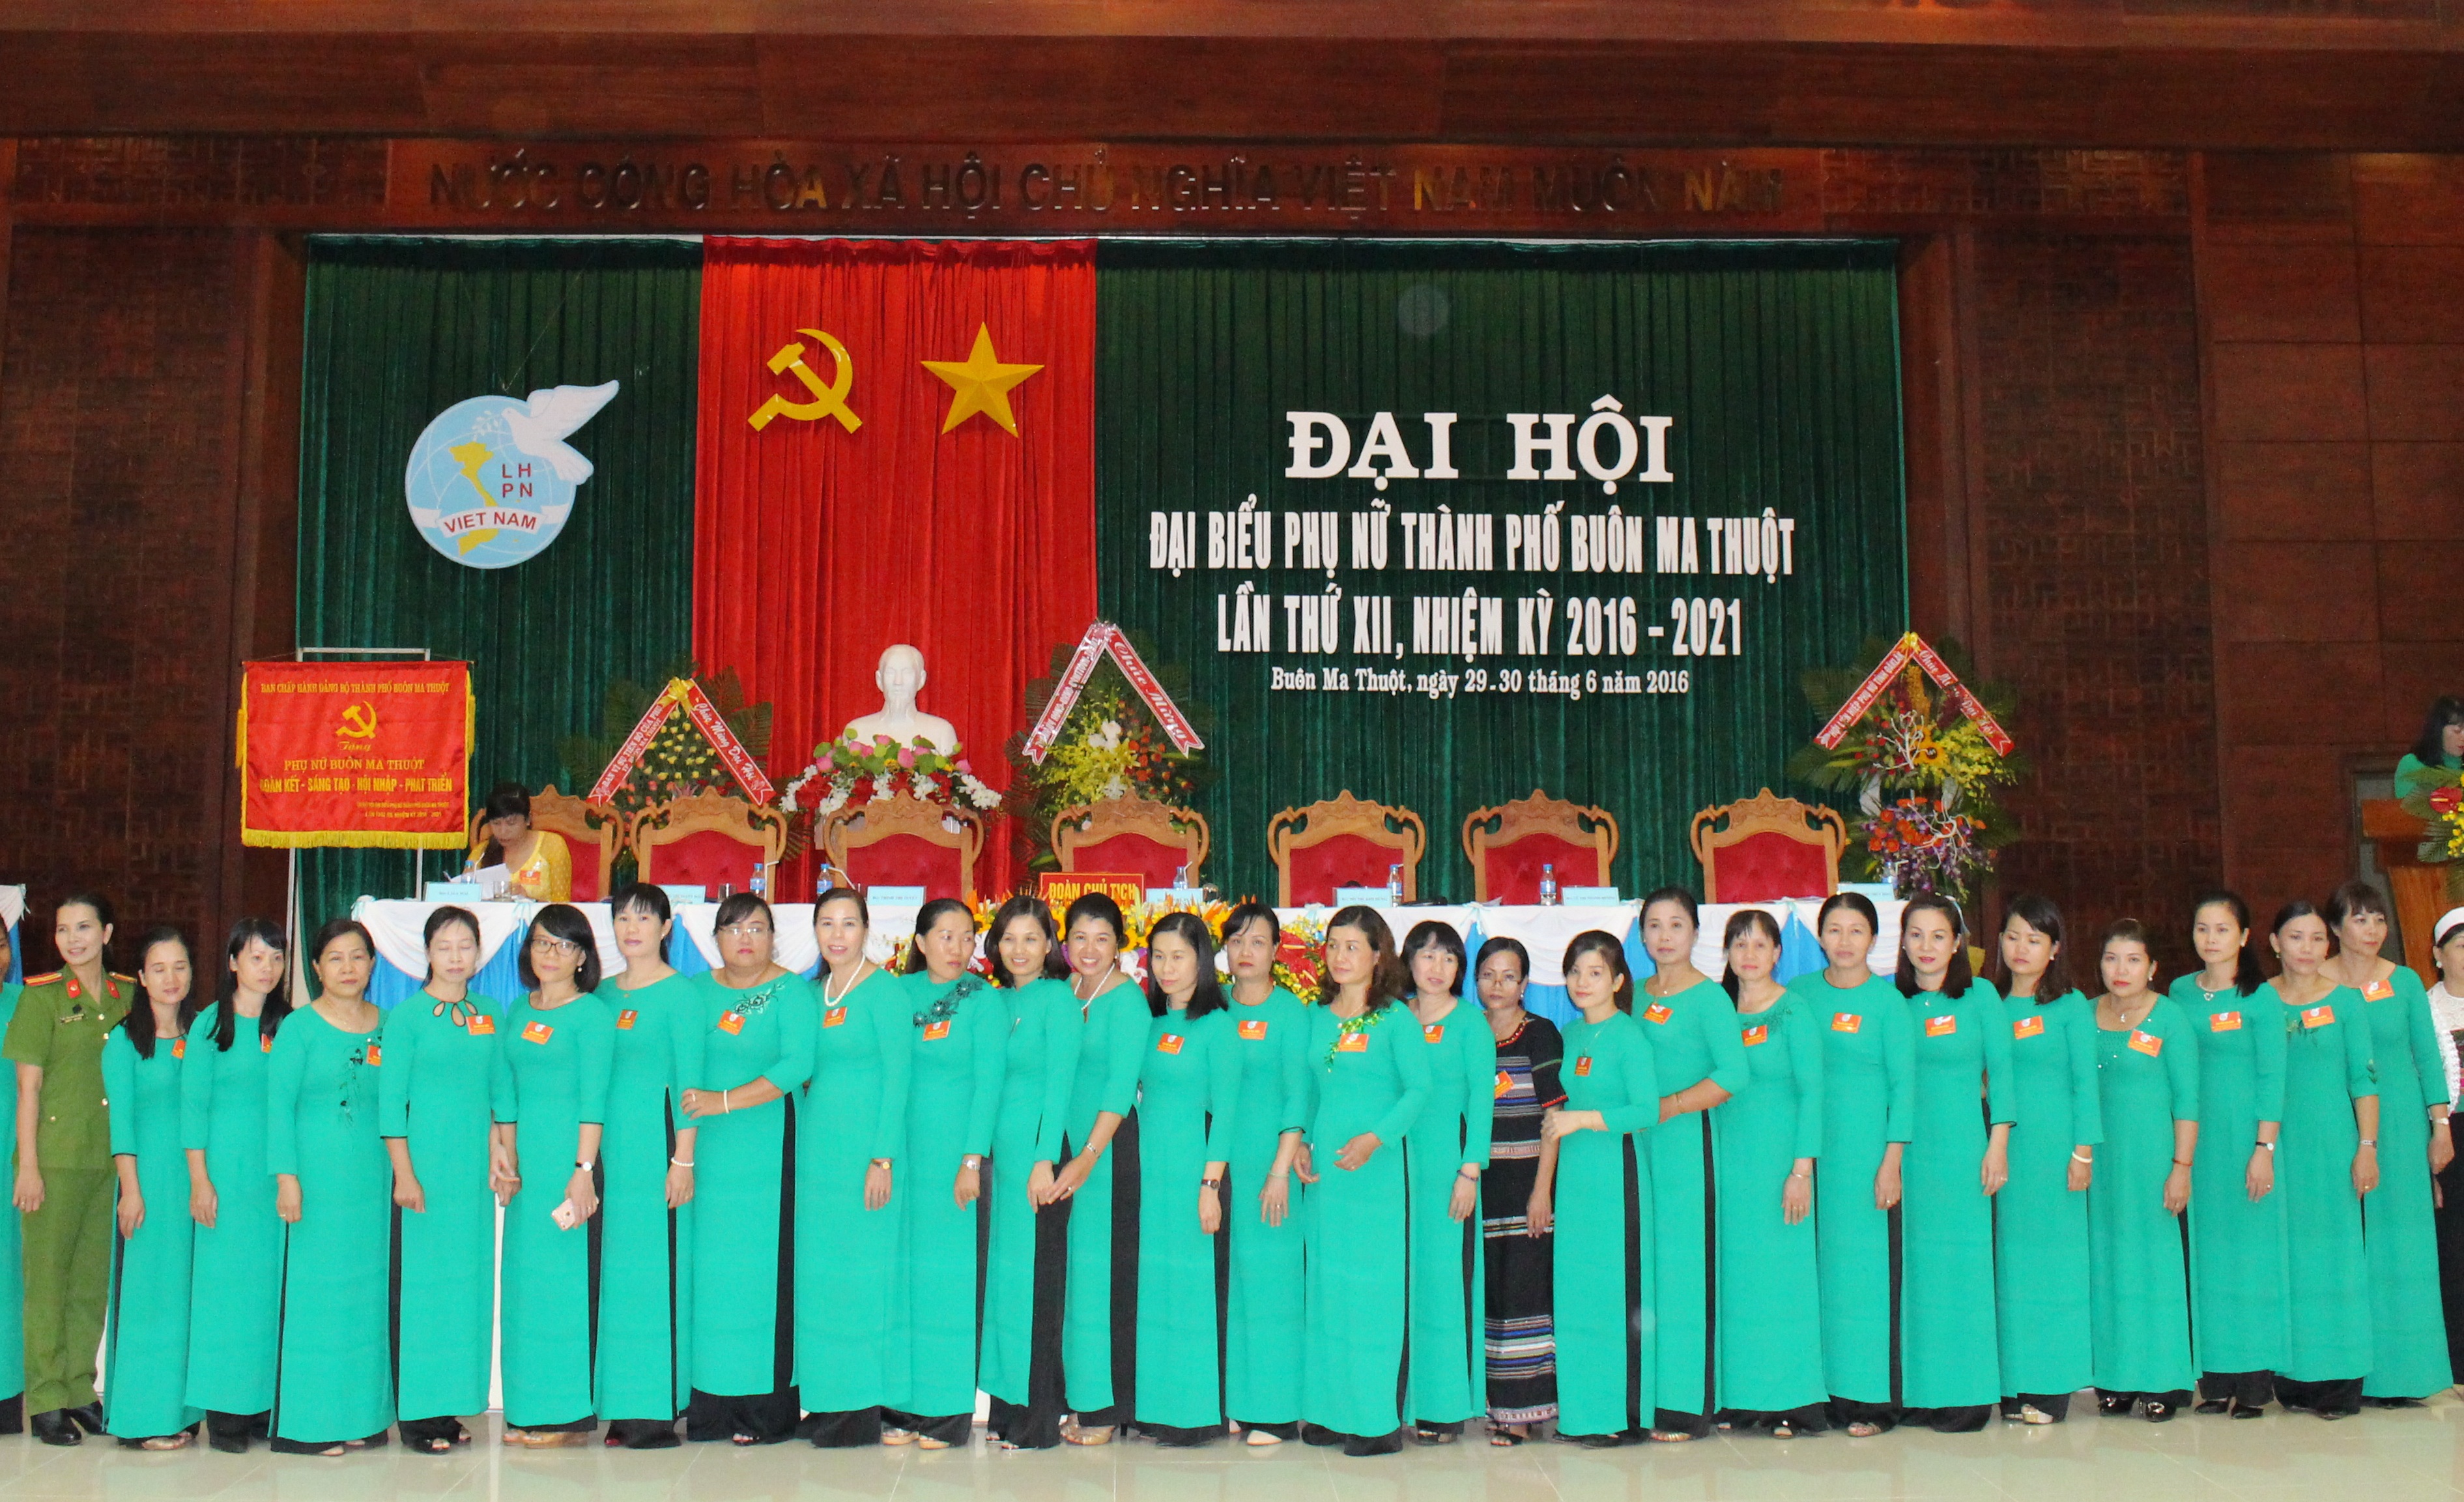 Đại hội đại biểu Phụ nữ thành phố Buôn Ma Thuột lần thứ XII, nhiệm kỳ 2016 - 2021.